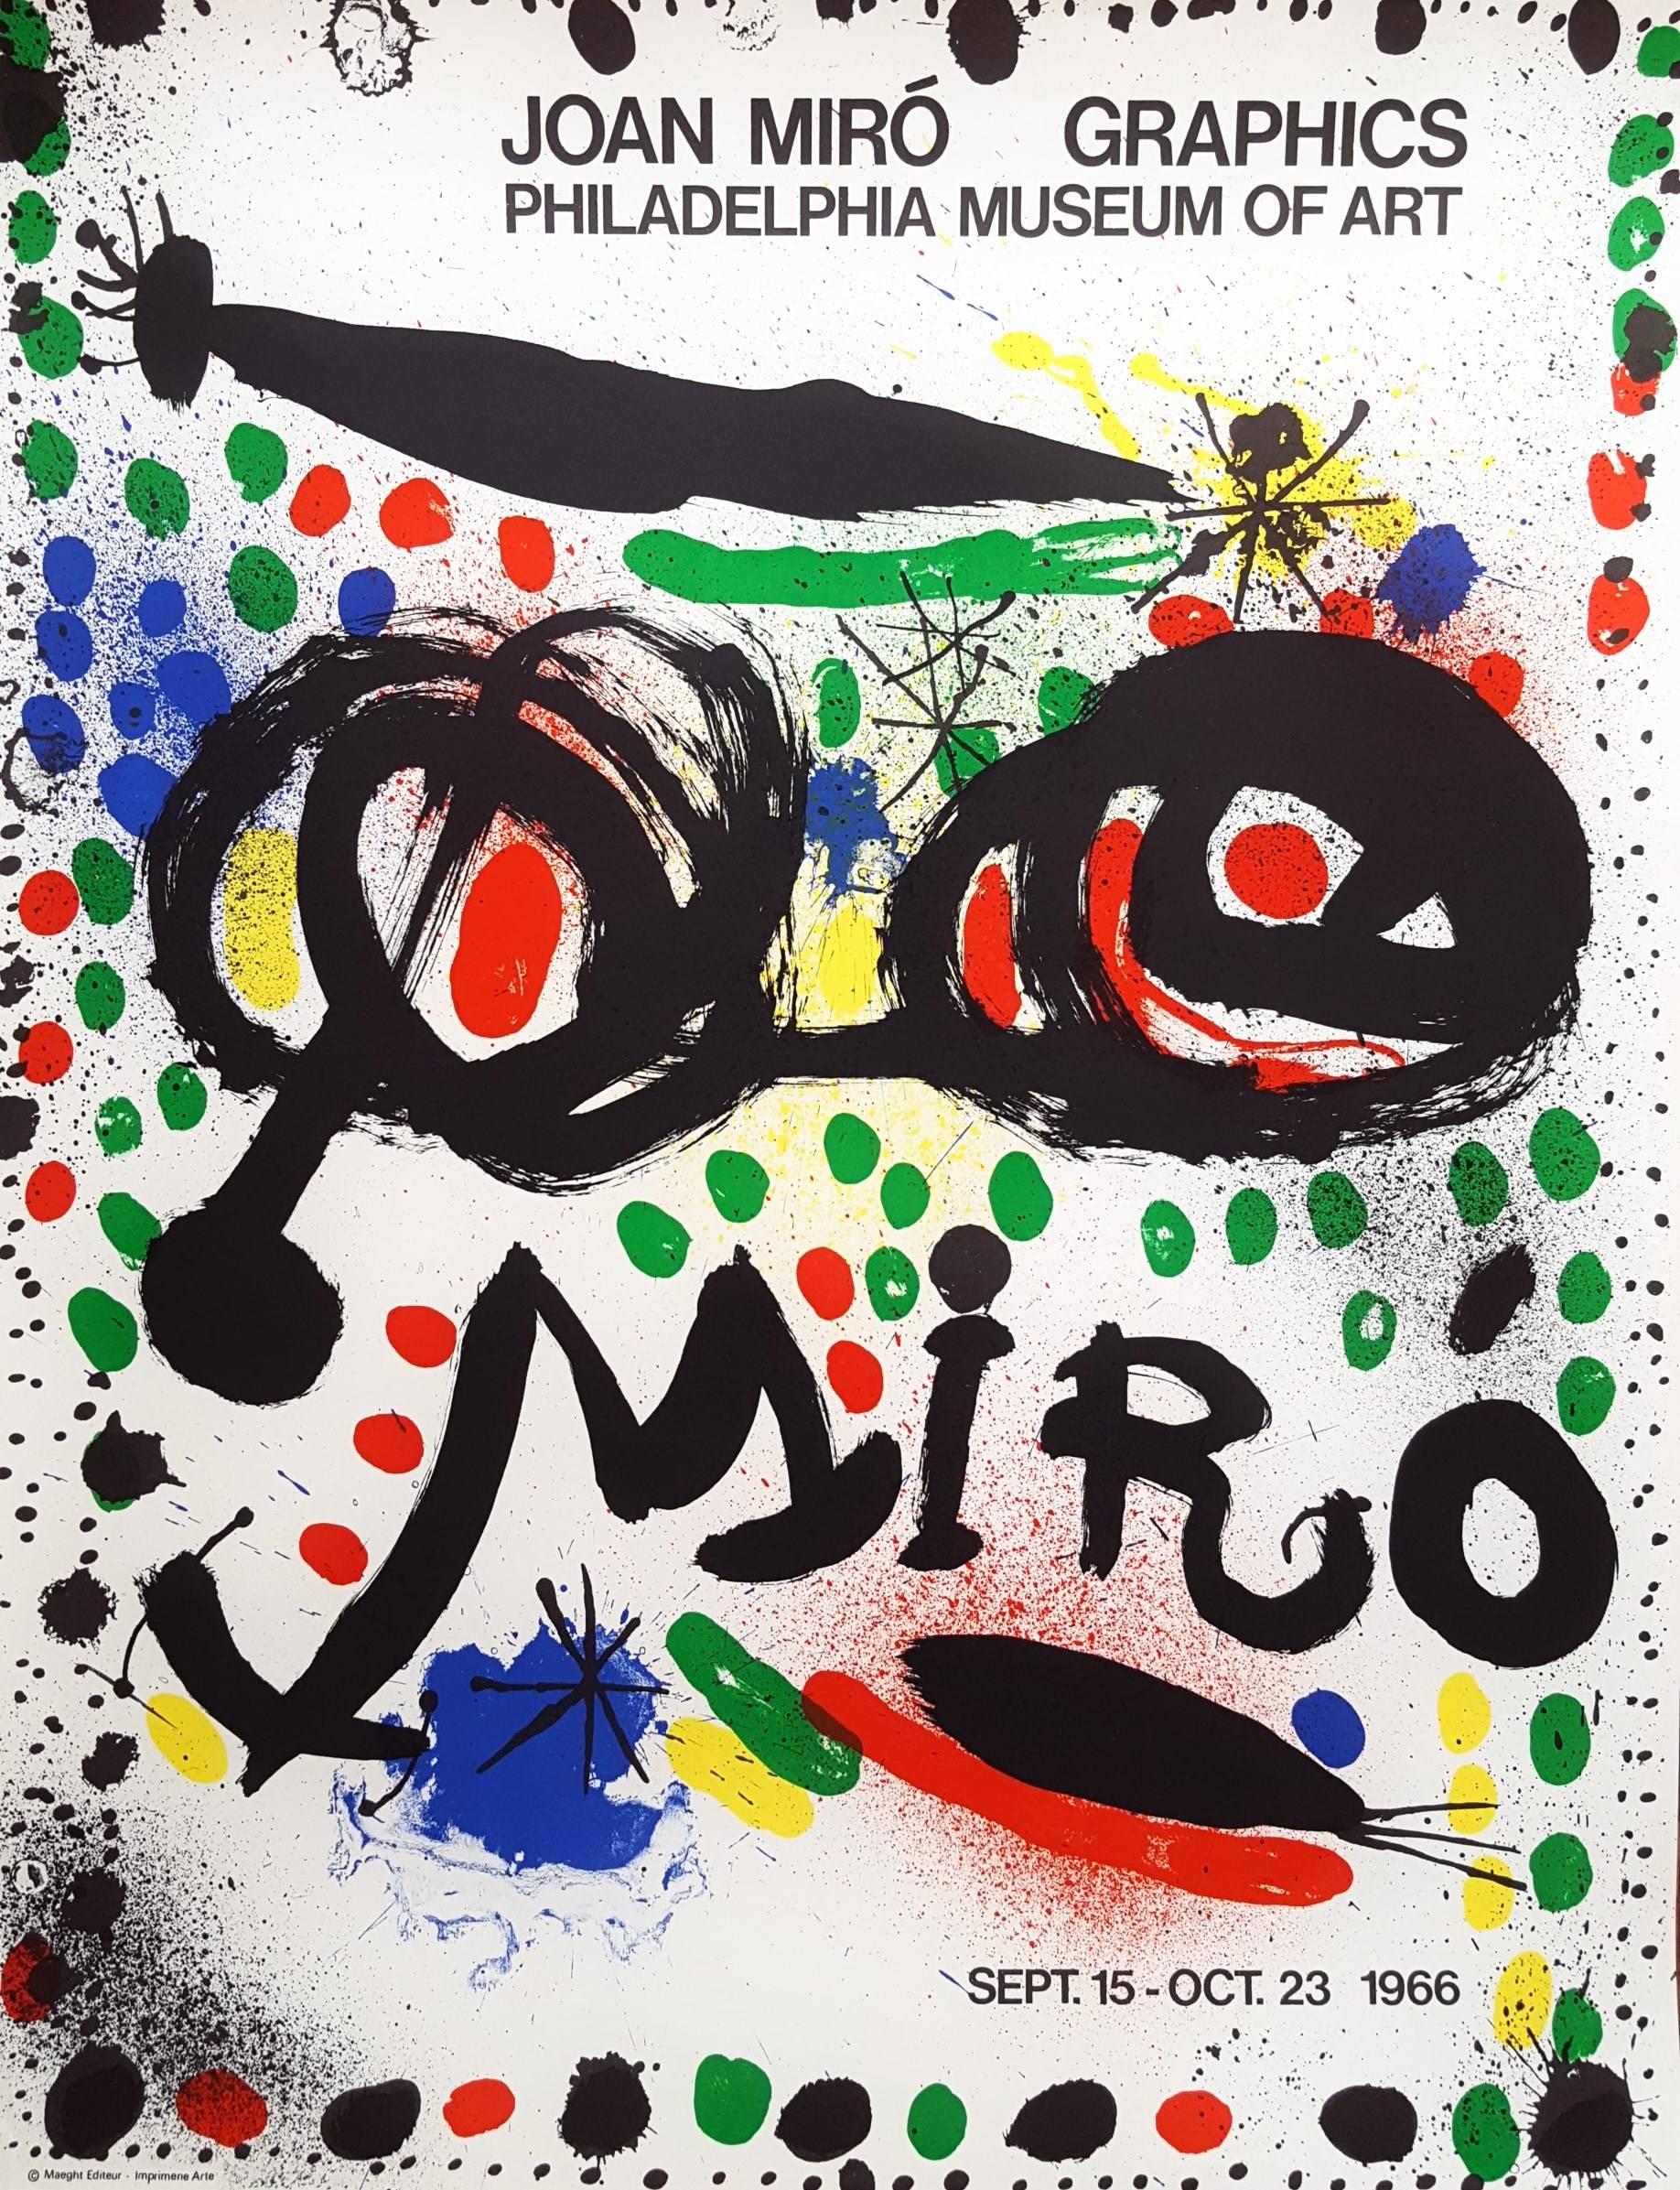 Joan Miró Abstract Print – grafische Grafiken: Philadelphia Museum of Art